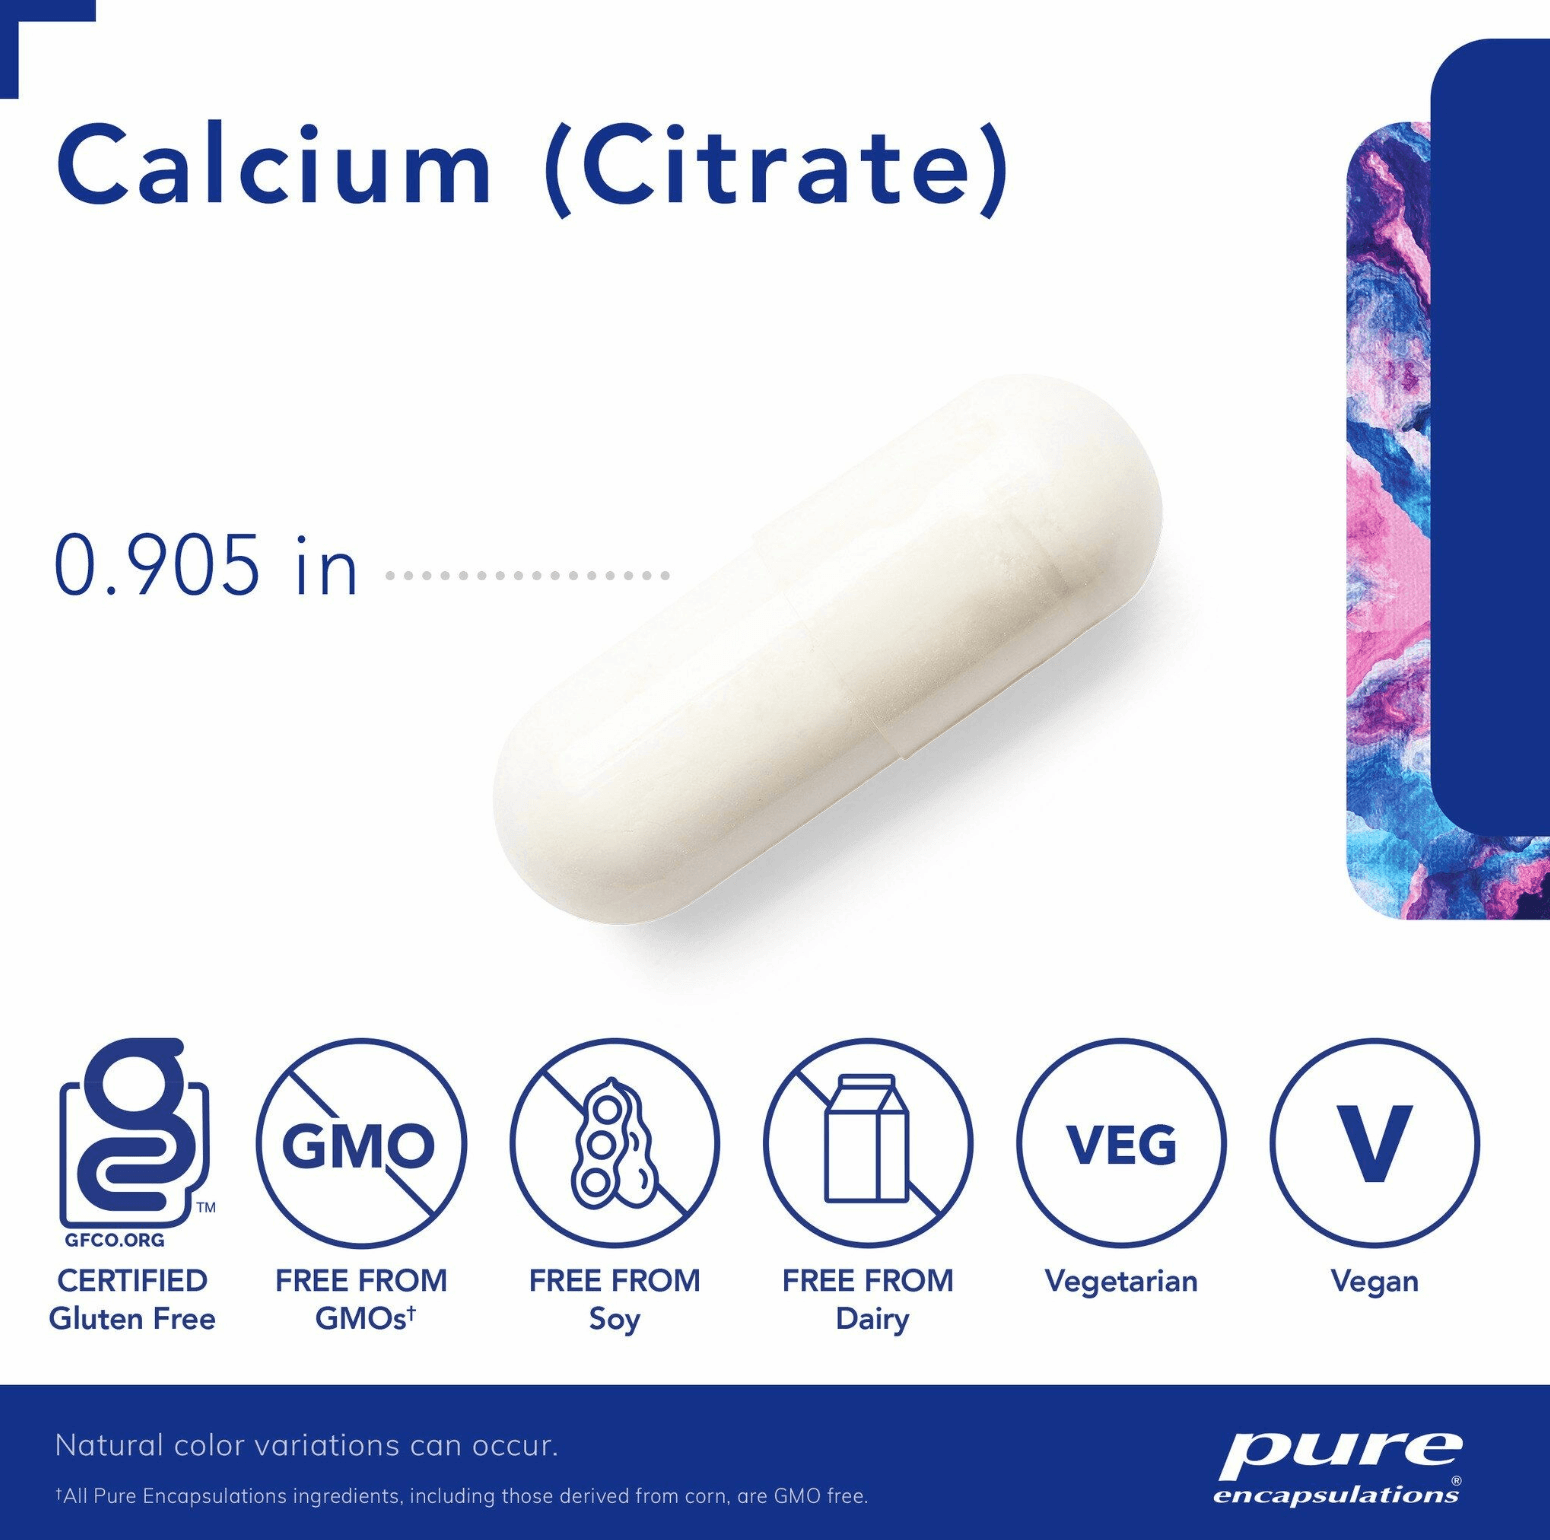 Pure Encapsulation Calcium (MCHA) Capsules